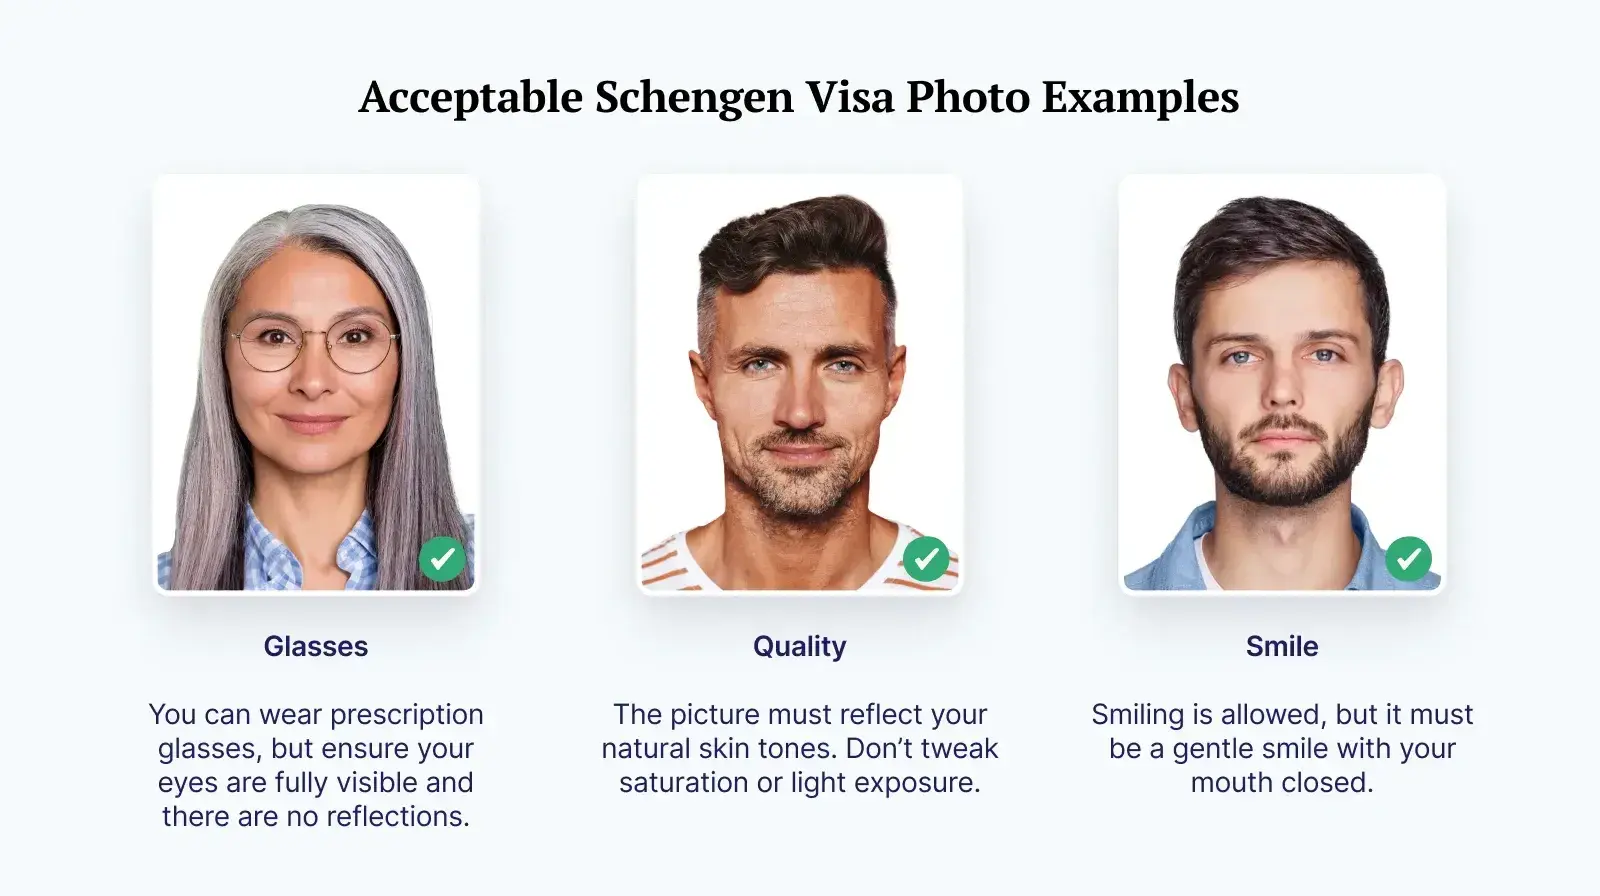 Schengen visa photo